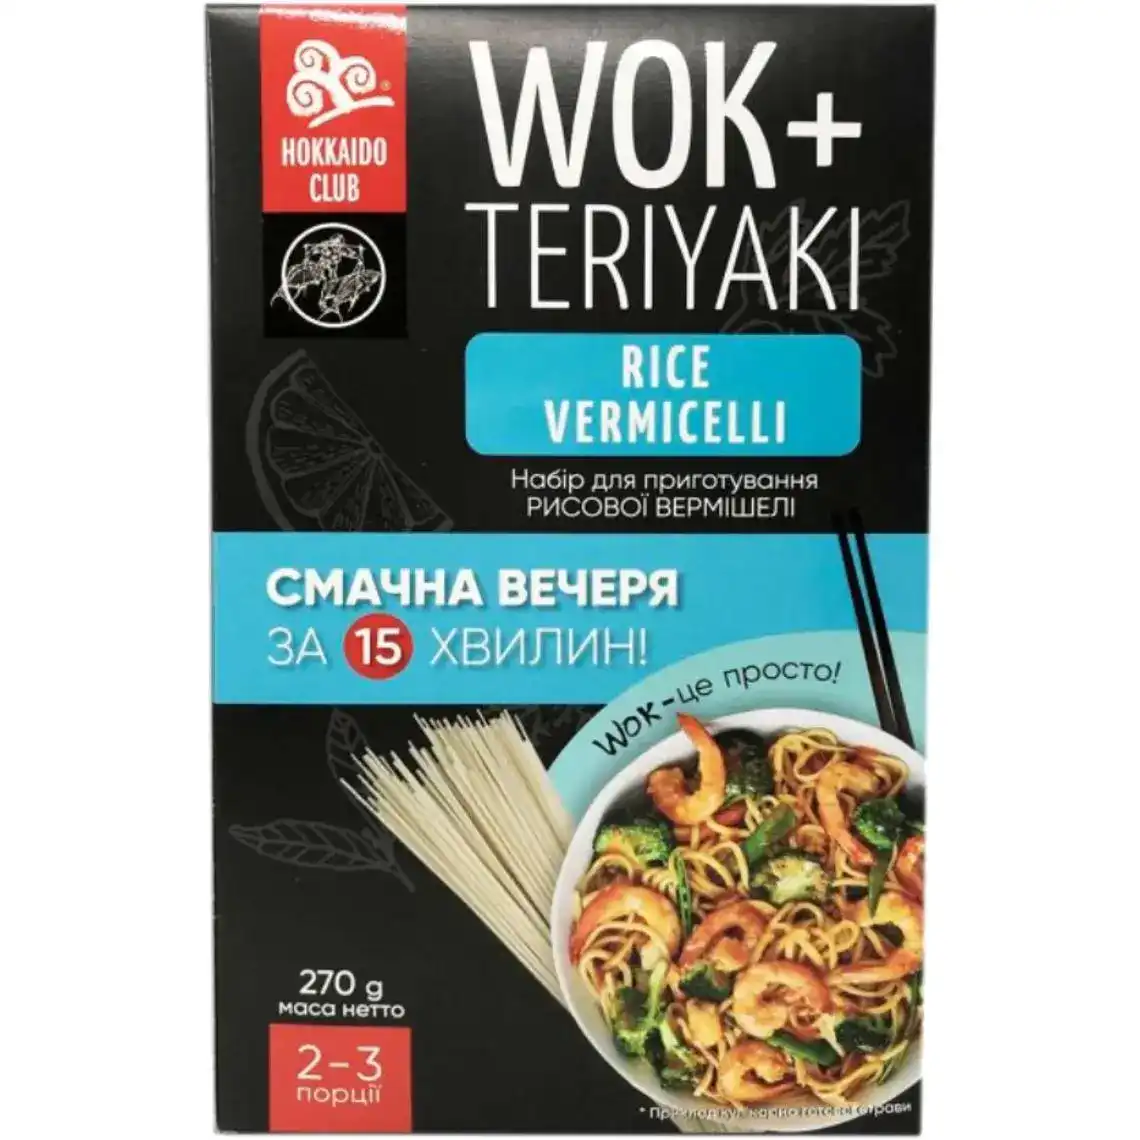 Набір для приготування рисової вермішелі Wok-Rice Vermicelli 270 г